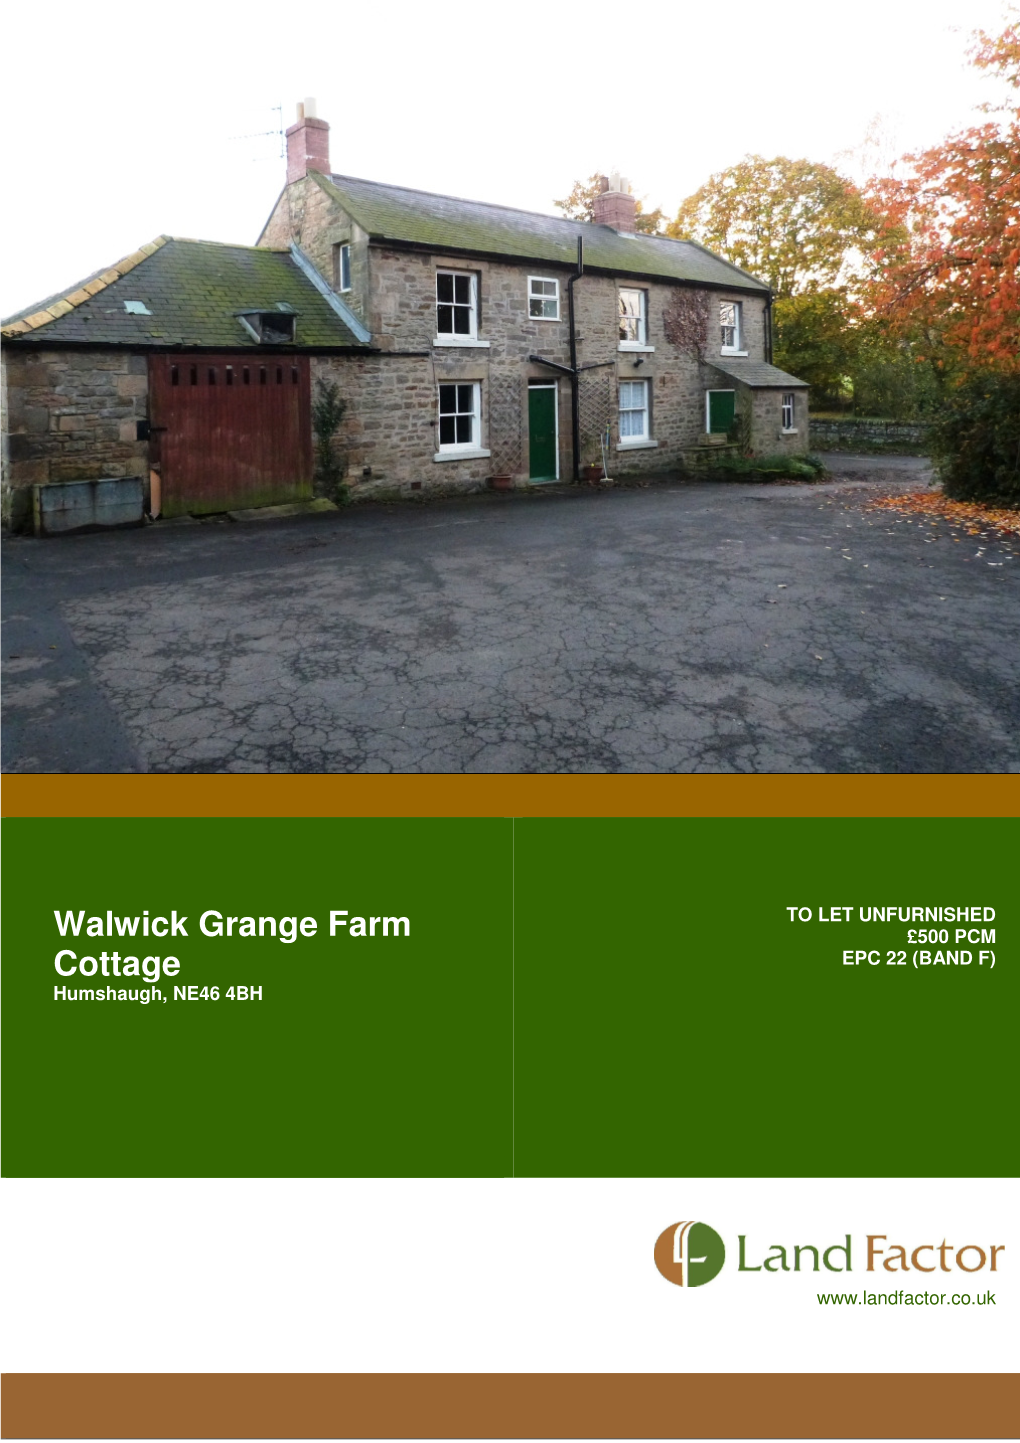 Walwick Grange Farm Cottage Humshaugh, NE46 4BH  Hexham 5 Miles  Newcastle Upon Tyne 26 Miles